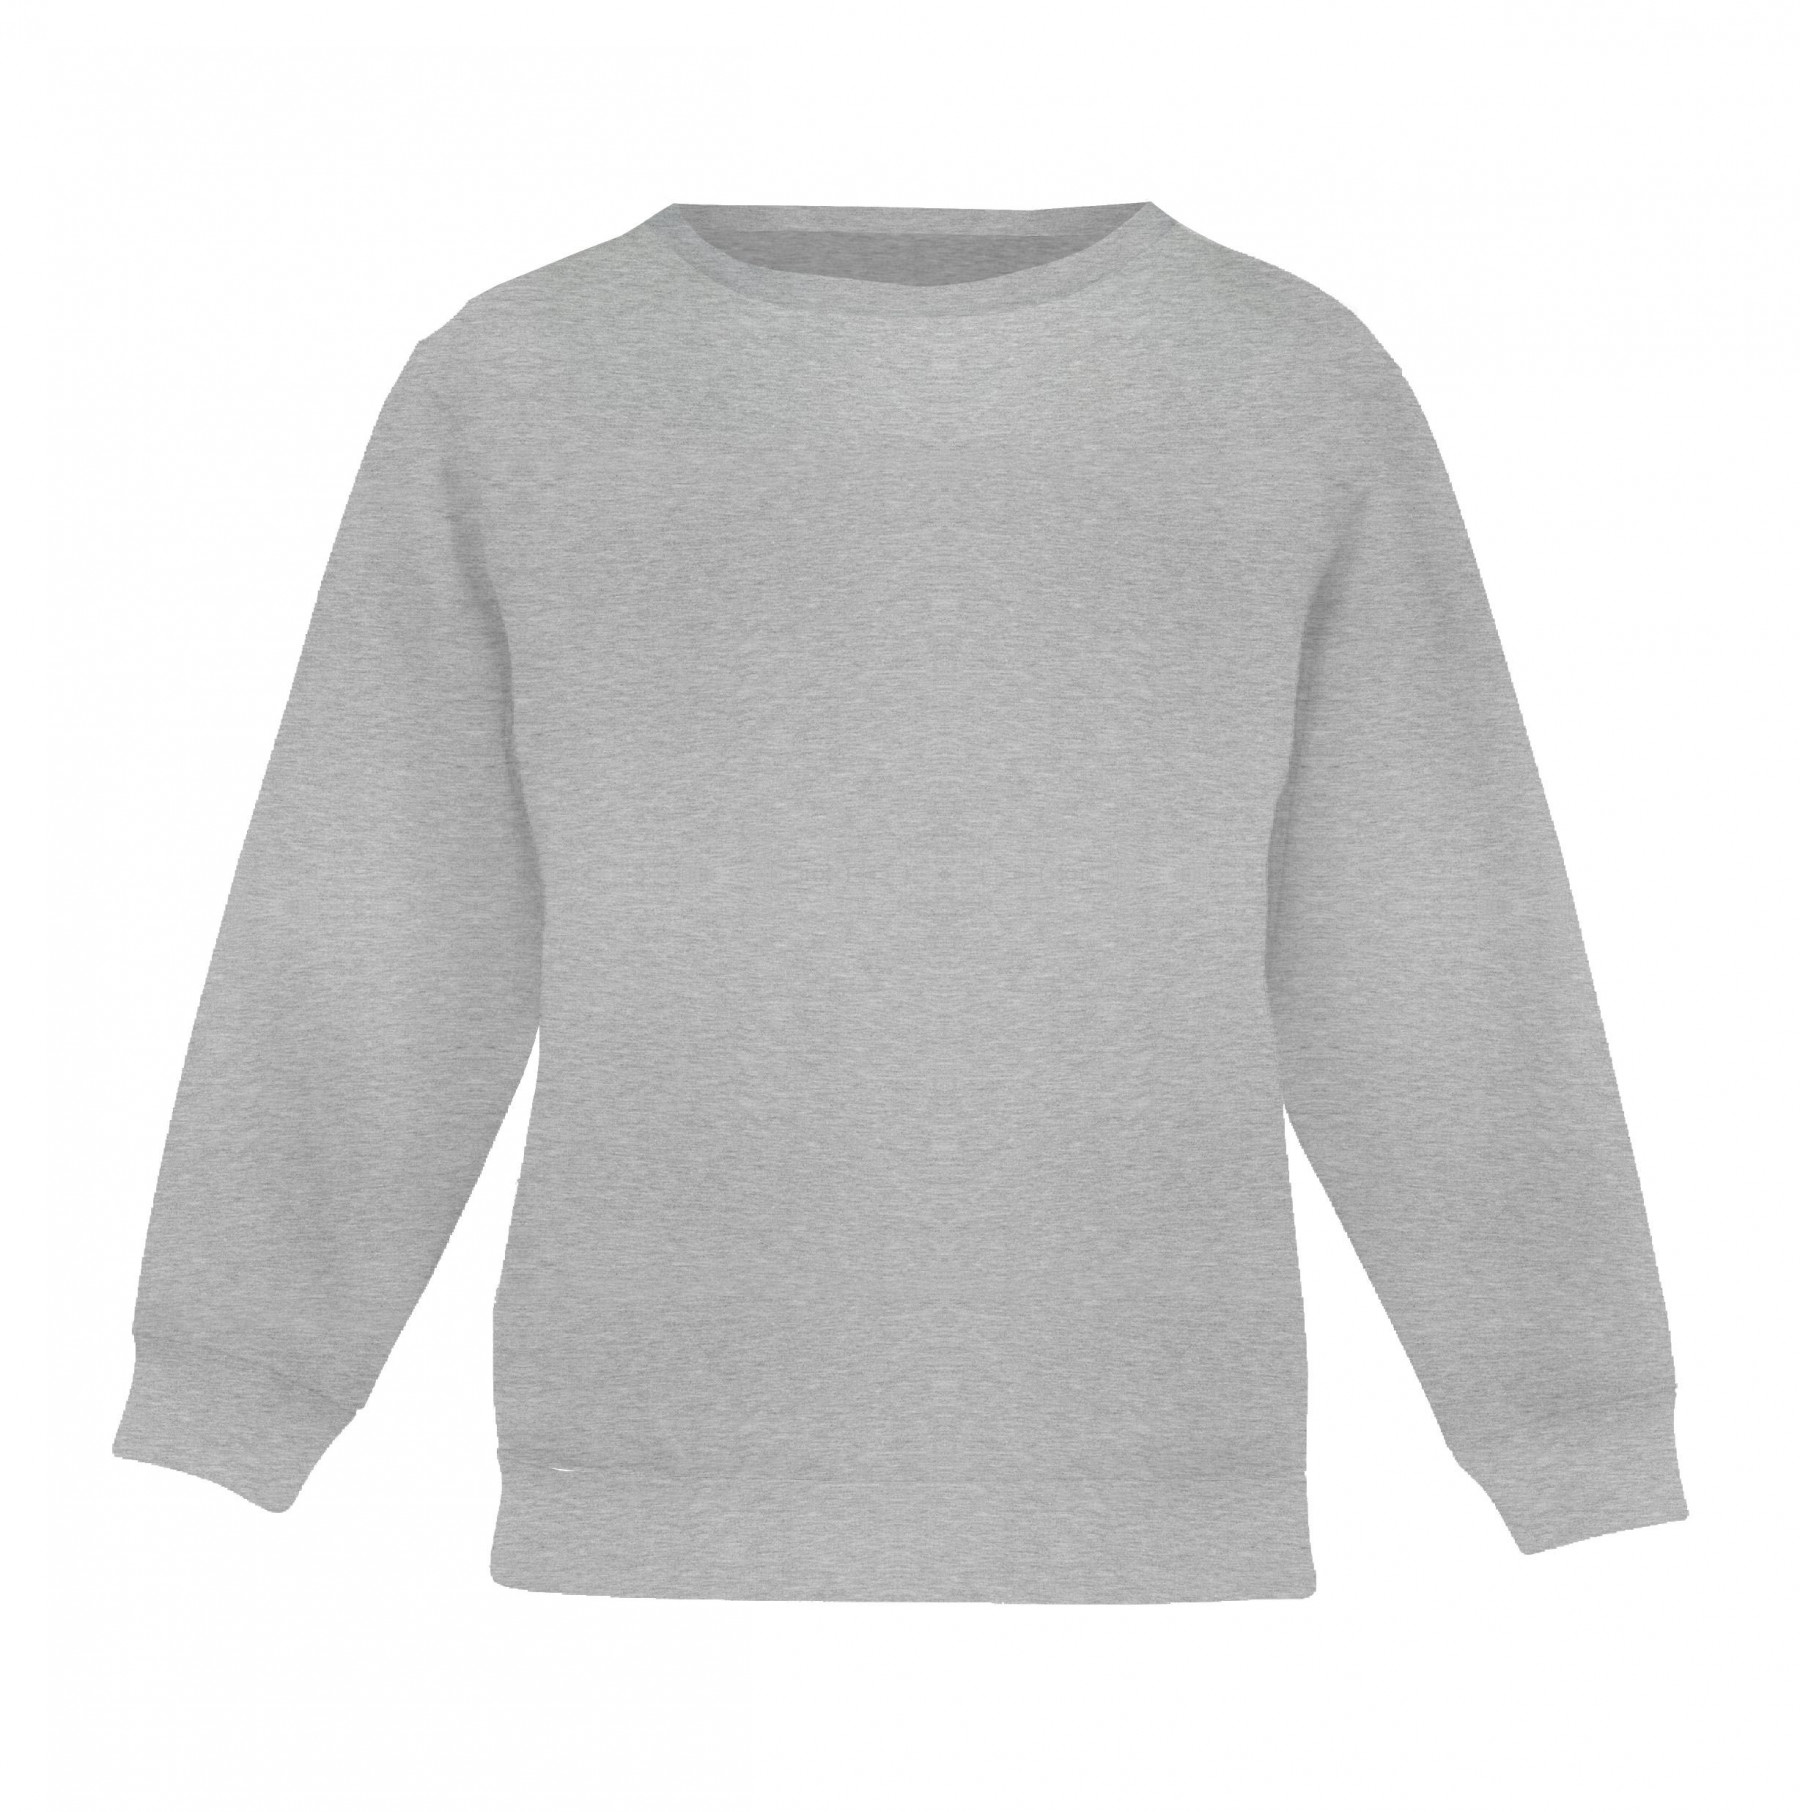 Kinder-Sweatshirts (NOE) - M-01 Melange - Sommersweat